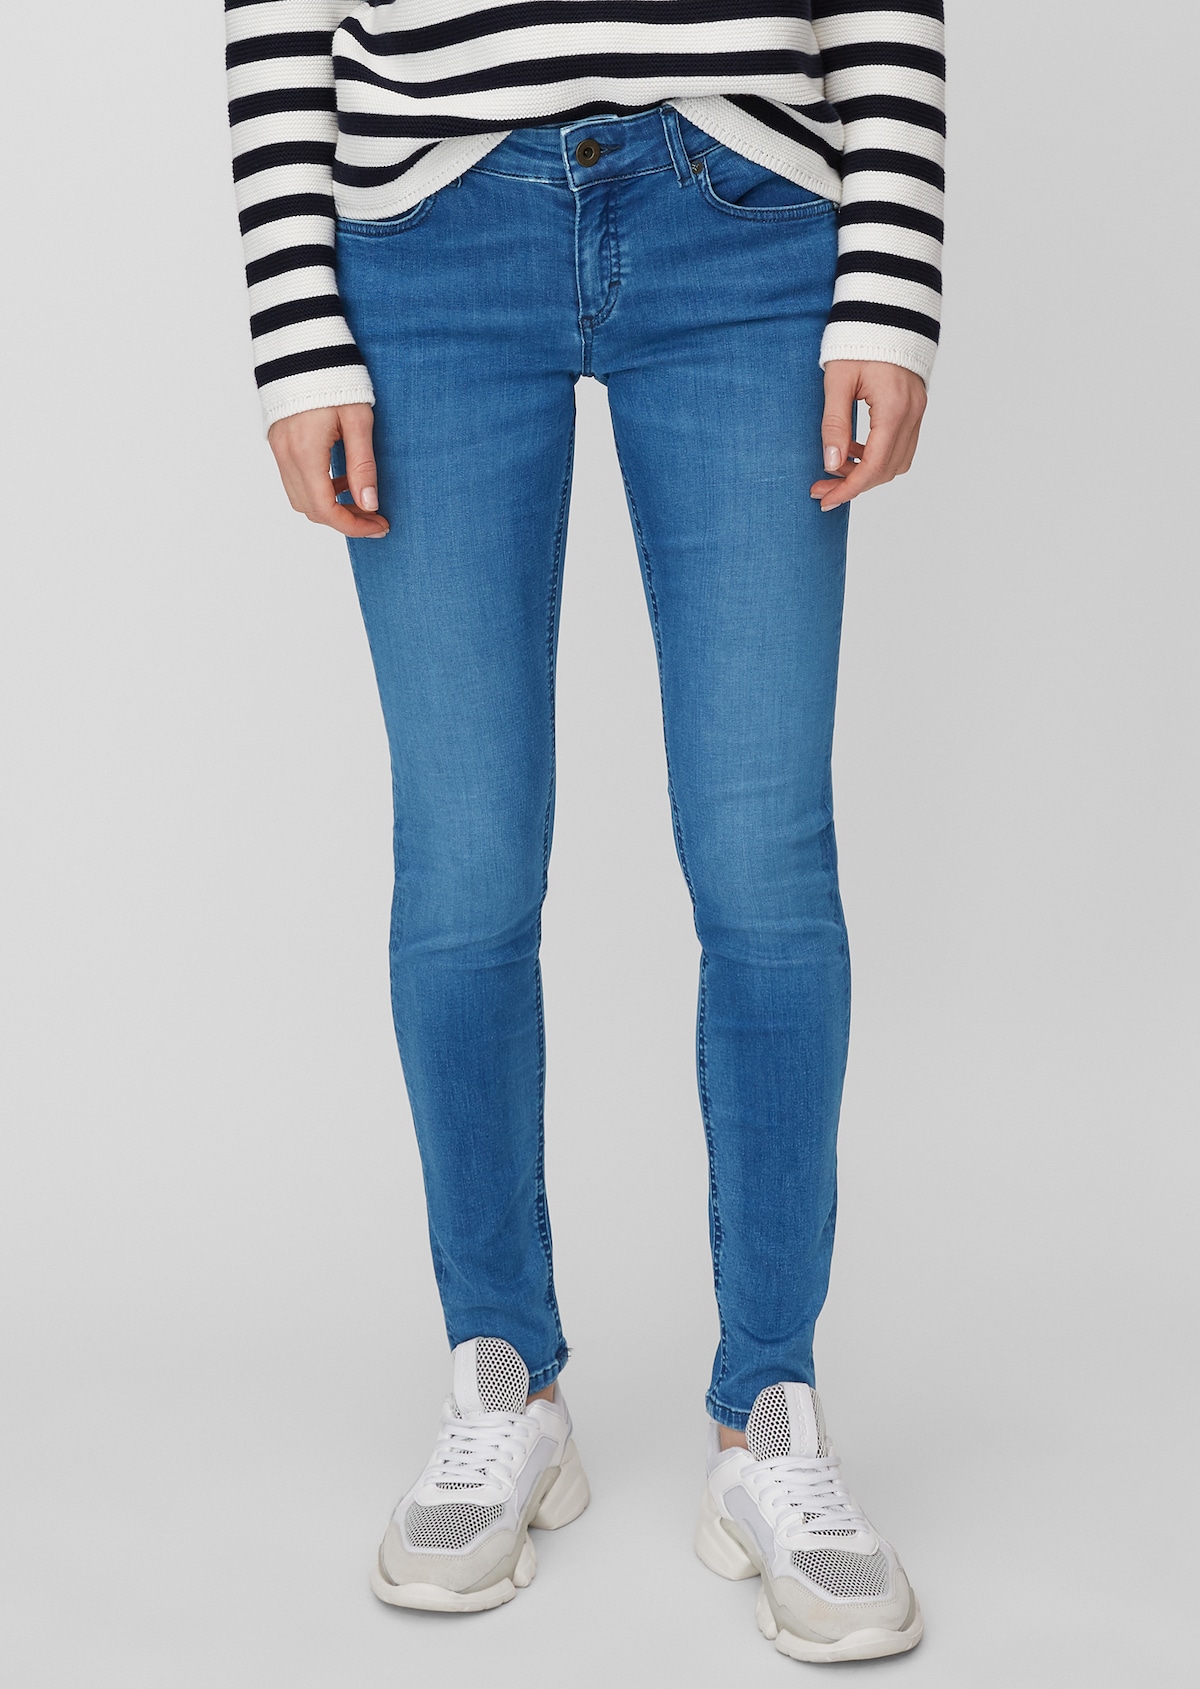 publiek ventilatie Detecteerbaar Jeans SKARA slim model with a low-rise waist - blue | Skinny fit | MARC O' POLO